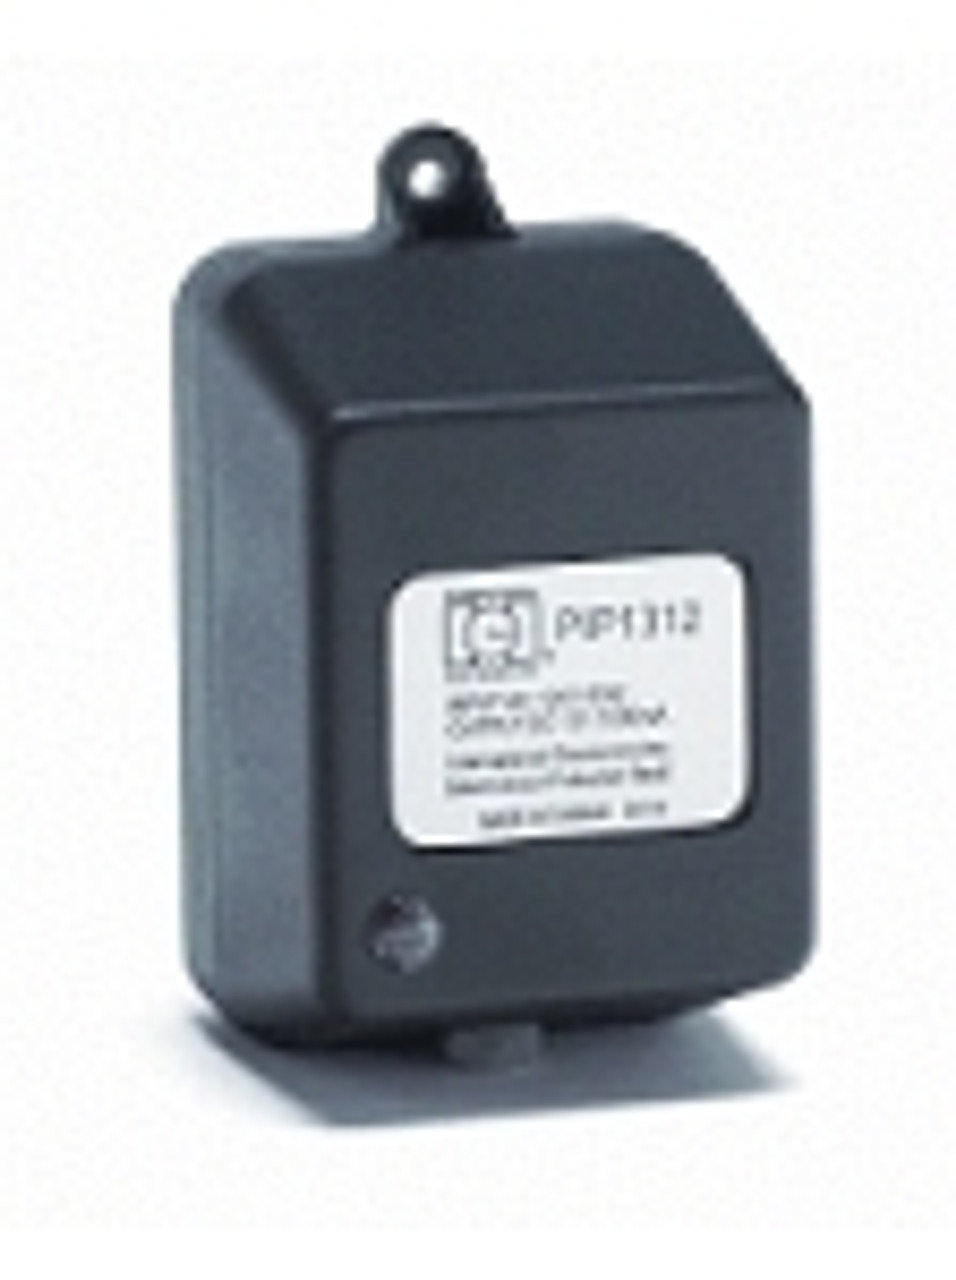 PIP16VAC IEI Plug-In Power Supply